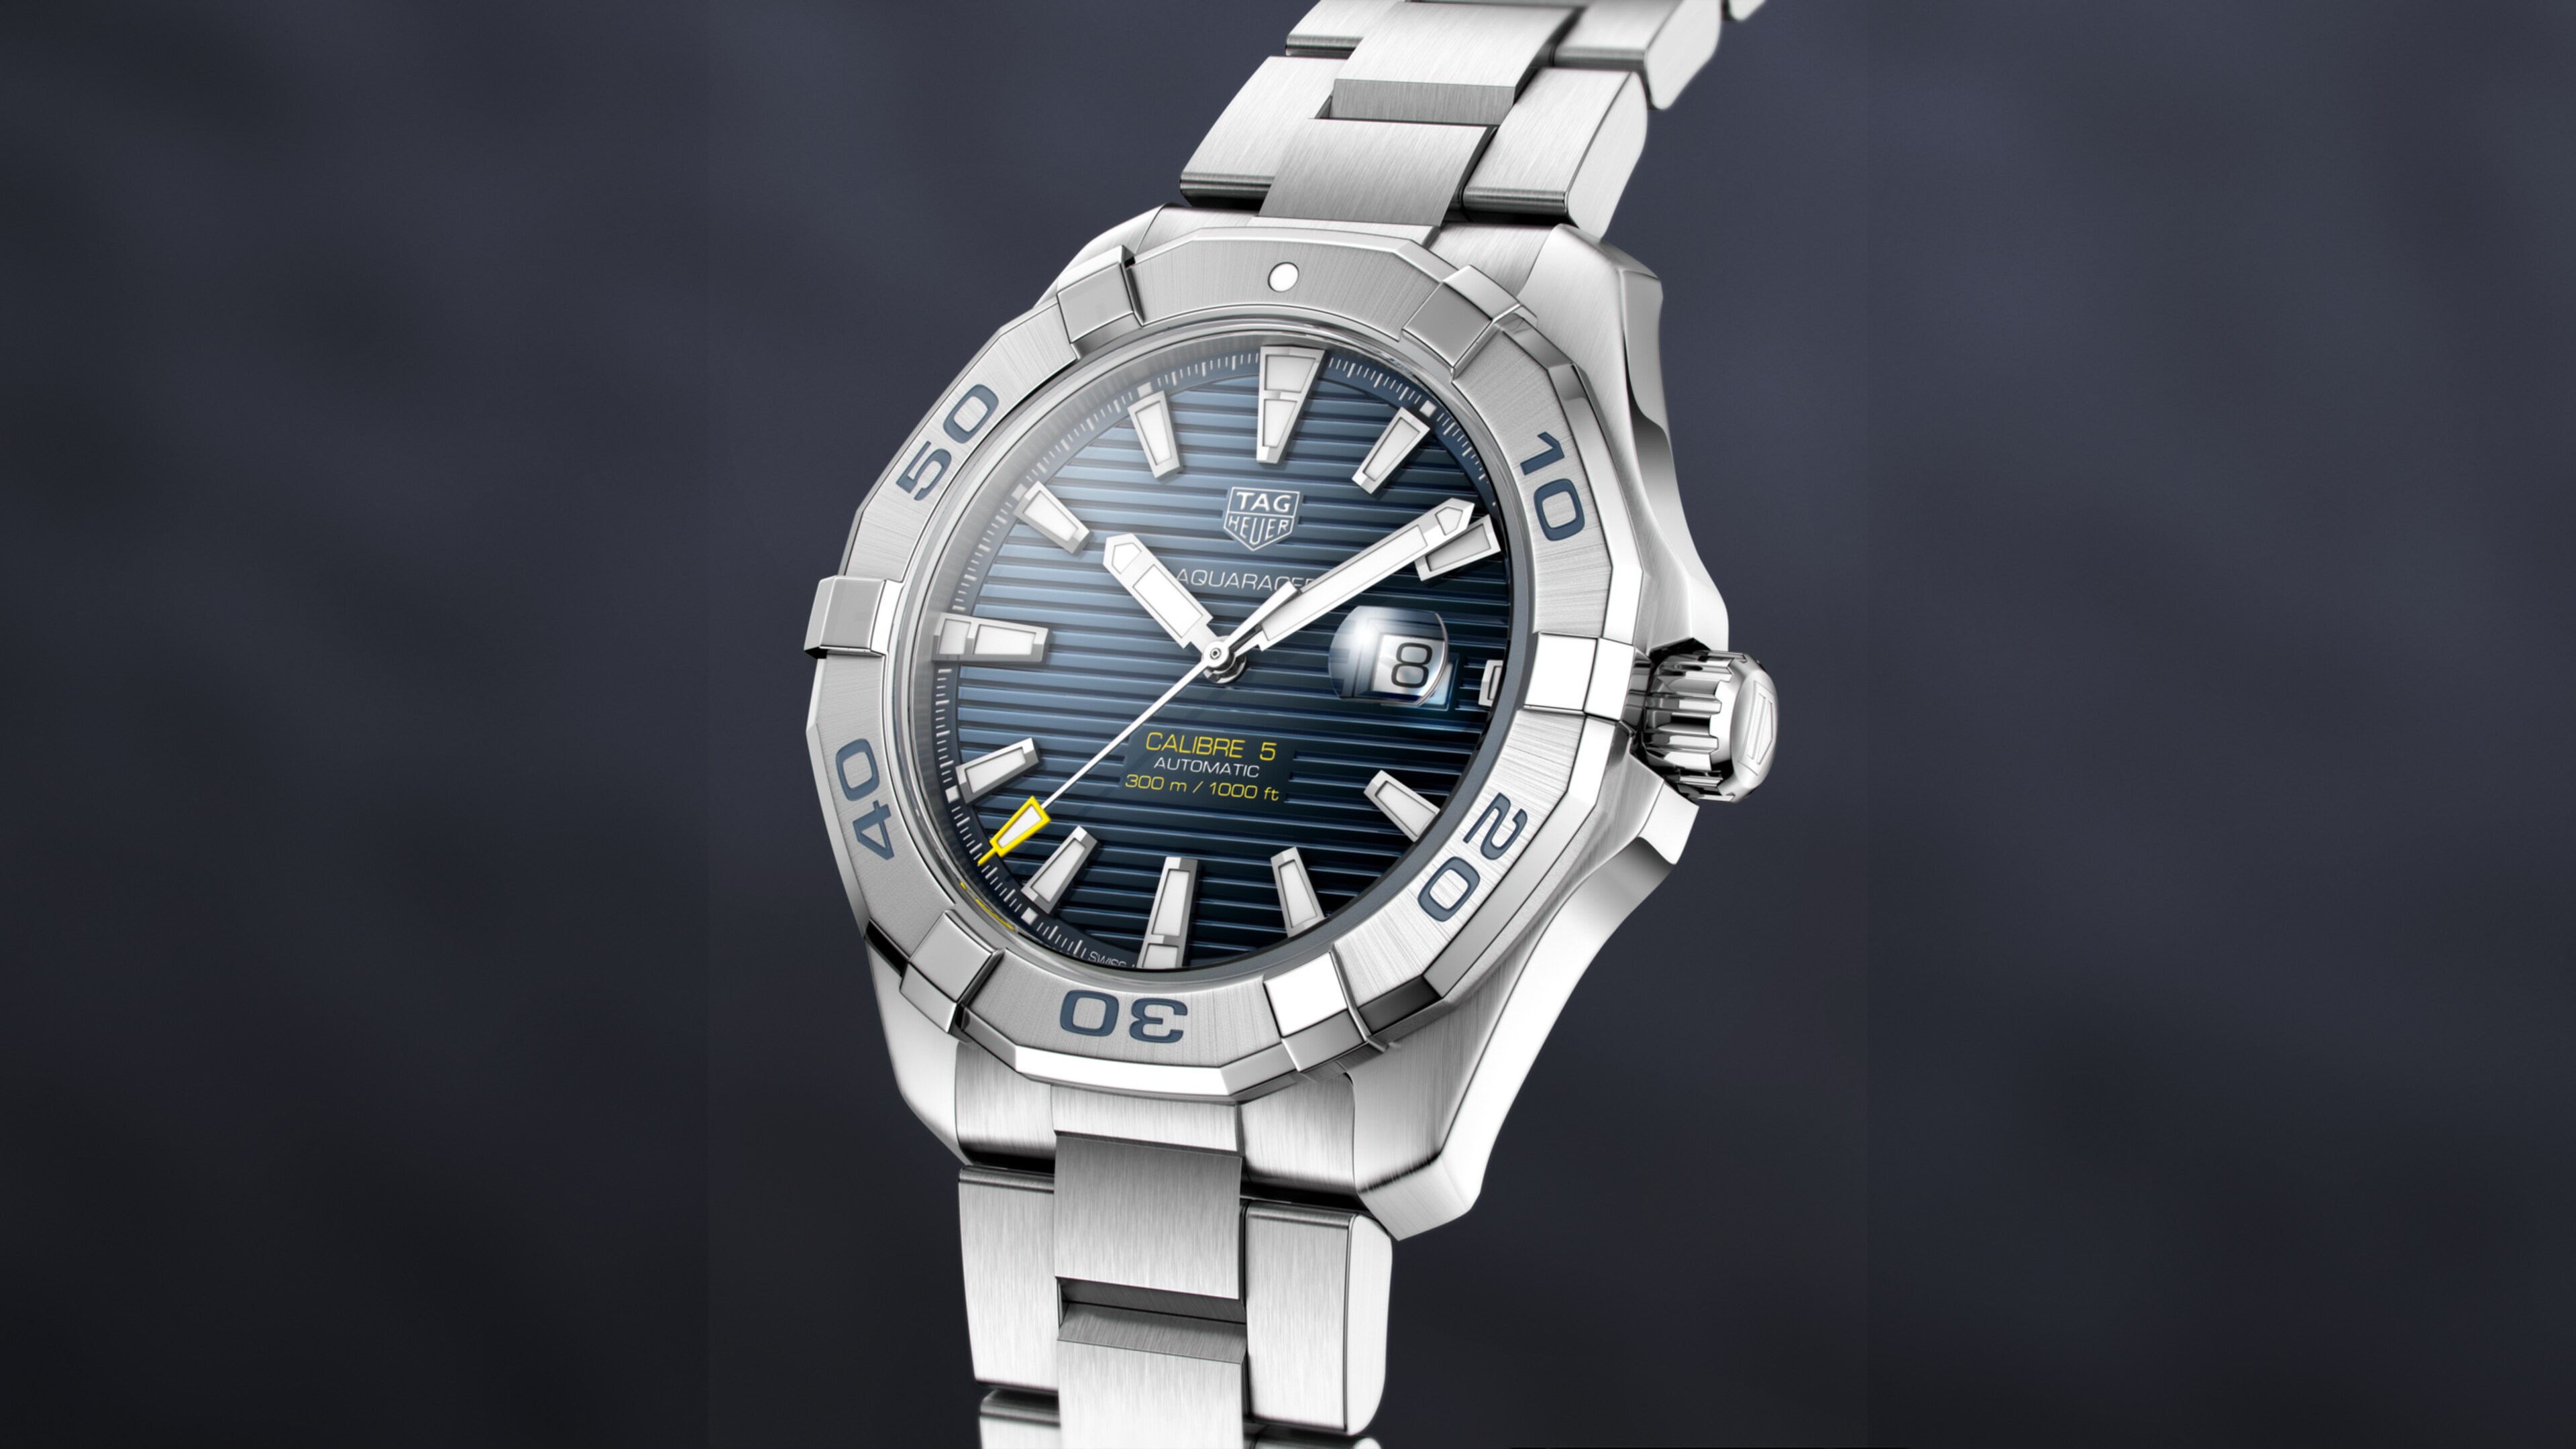 TAG Heuer Aquaracer Watch Calibre 5 Automatic Men 43 mm - WAY2012.BA0927